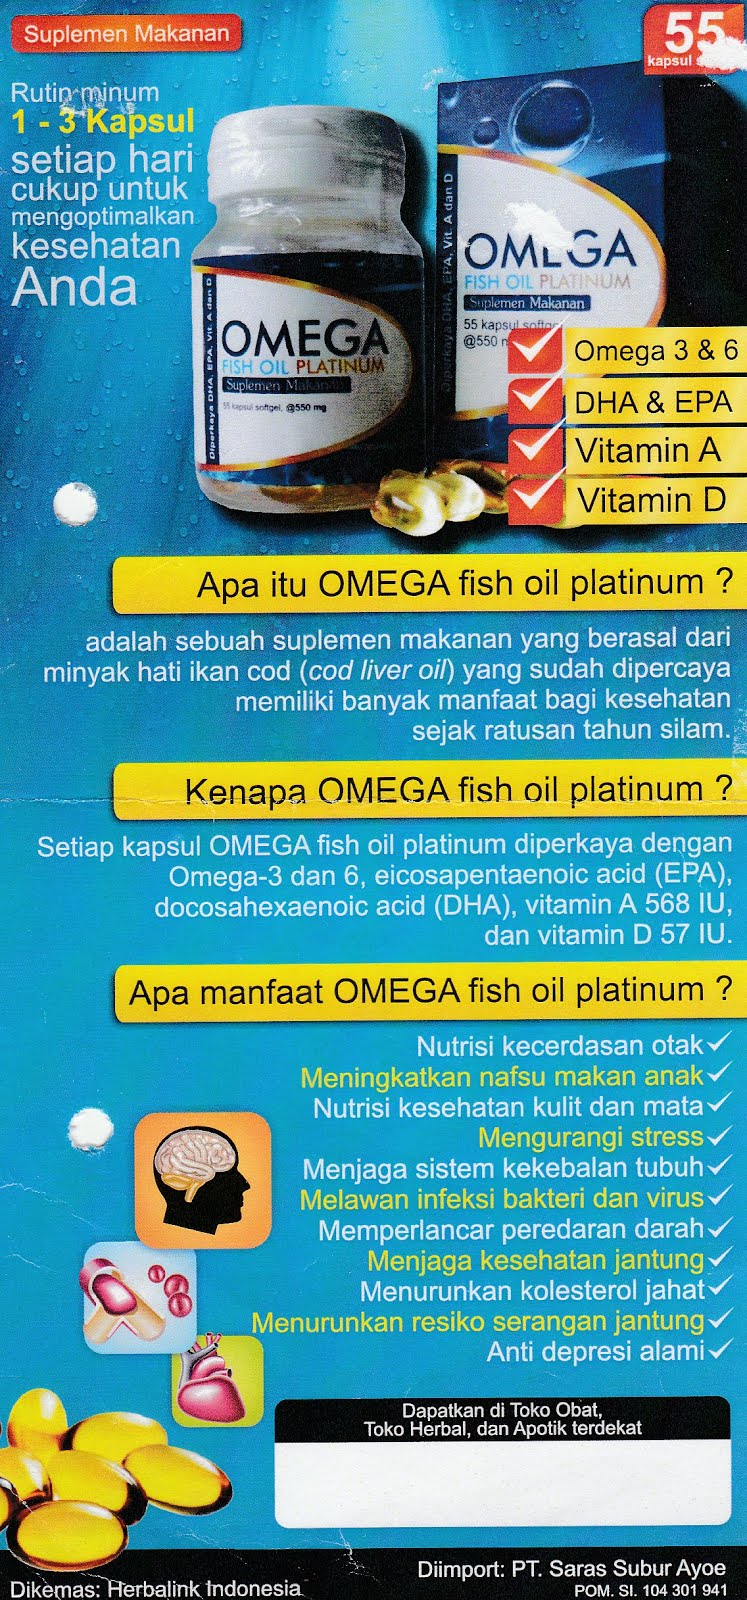 Omega fish oil platinum